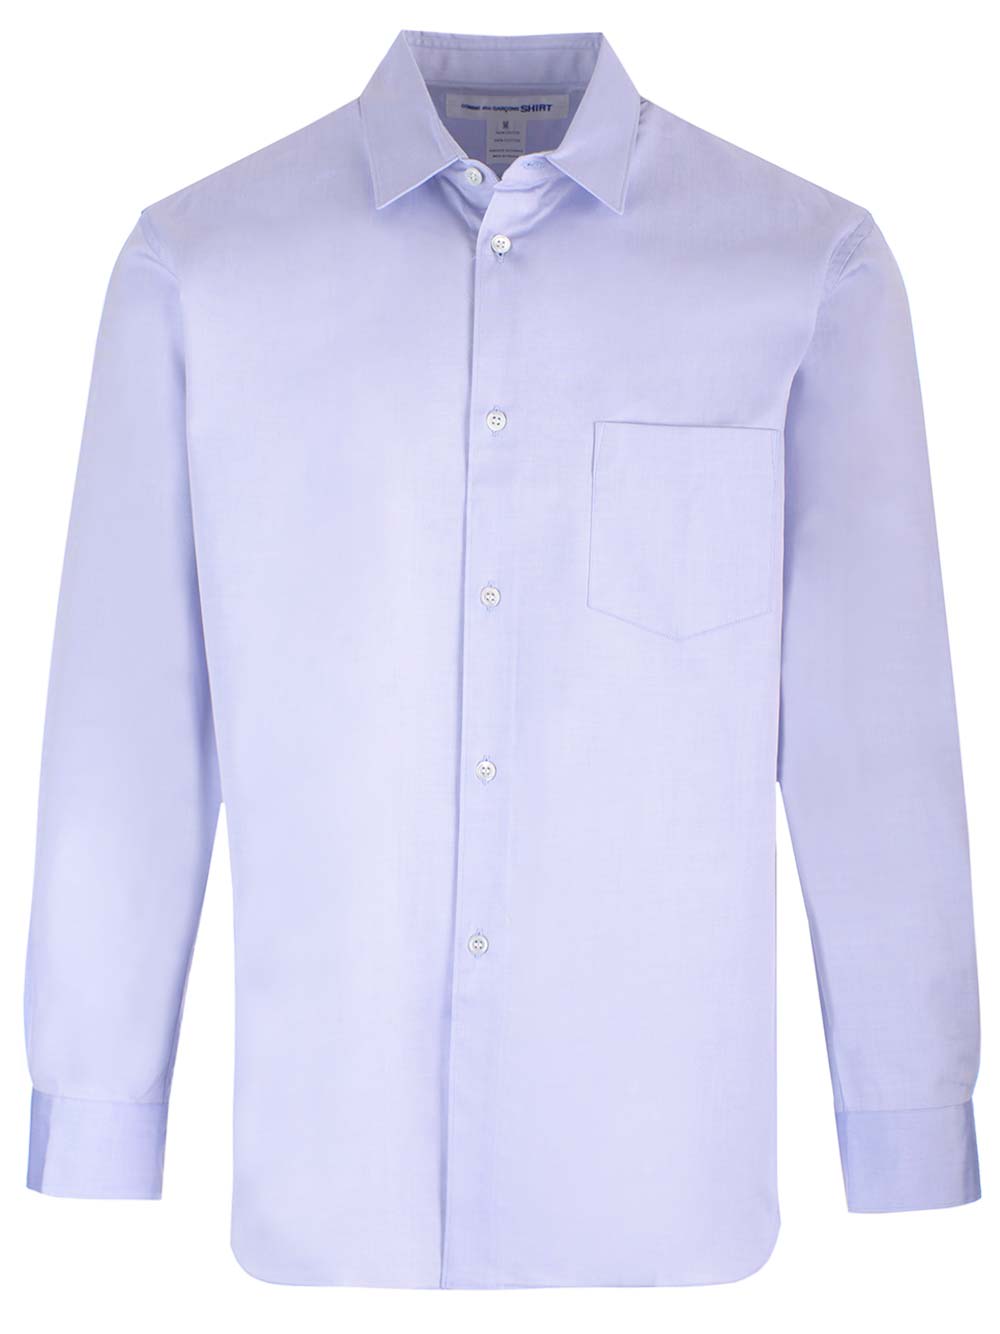 Comme Des Garçons Shirt Light Blue Shirt With Pocket